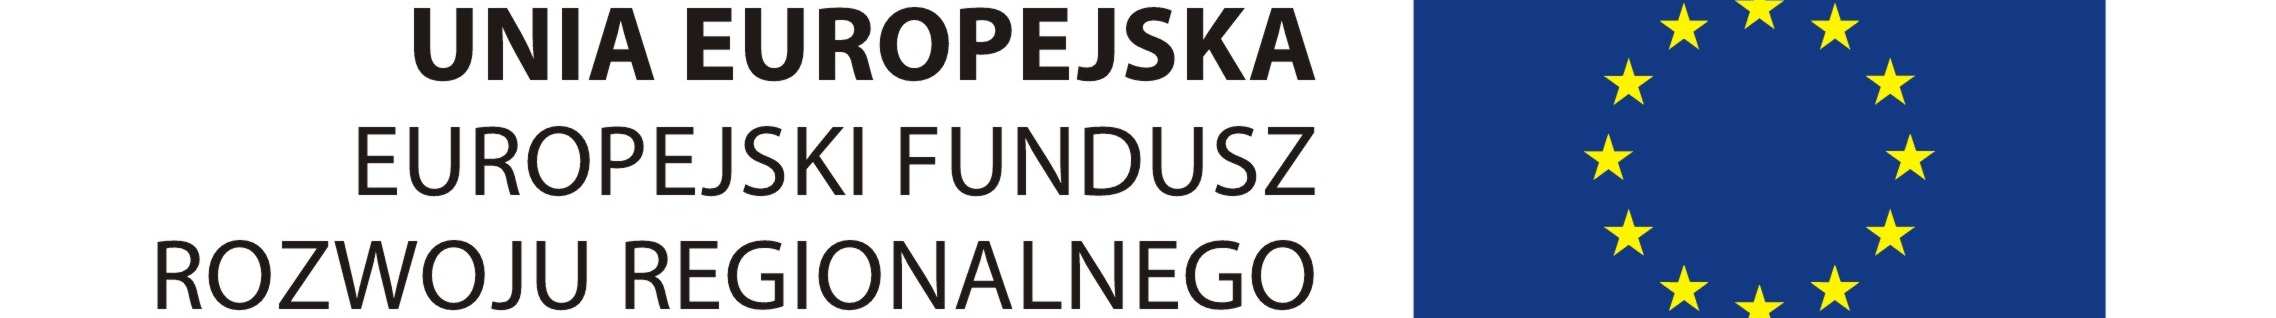 MINISTERSTWO ROZWOJU REGIONALNEGO Program Operacyjny Rozwój Polski Wschodniej 2007 2013 Narodowe Strategiczne Ramy Odniesienia 2007 2013 Szczegółowy opis osi priorytetowych Dokument